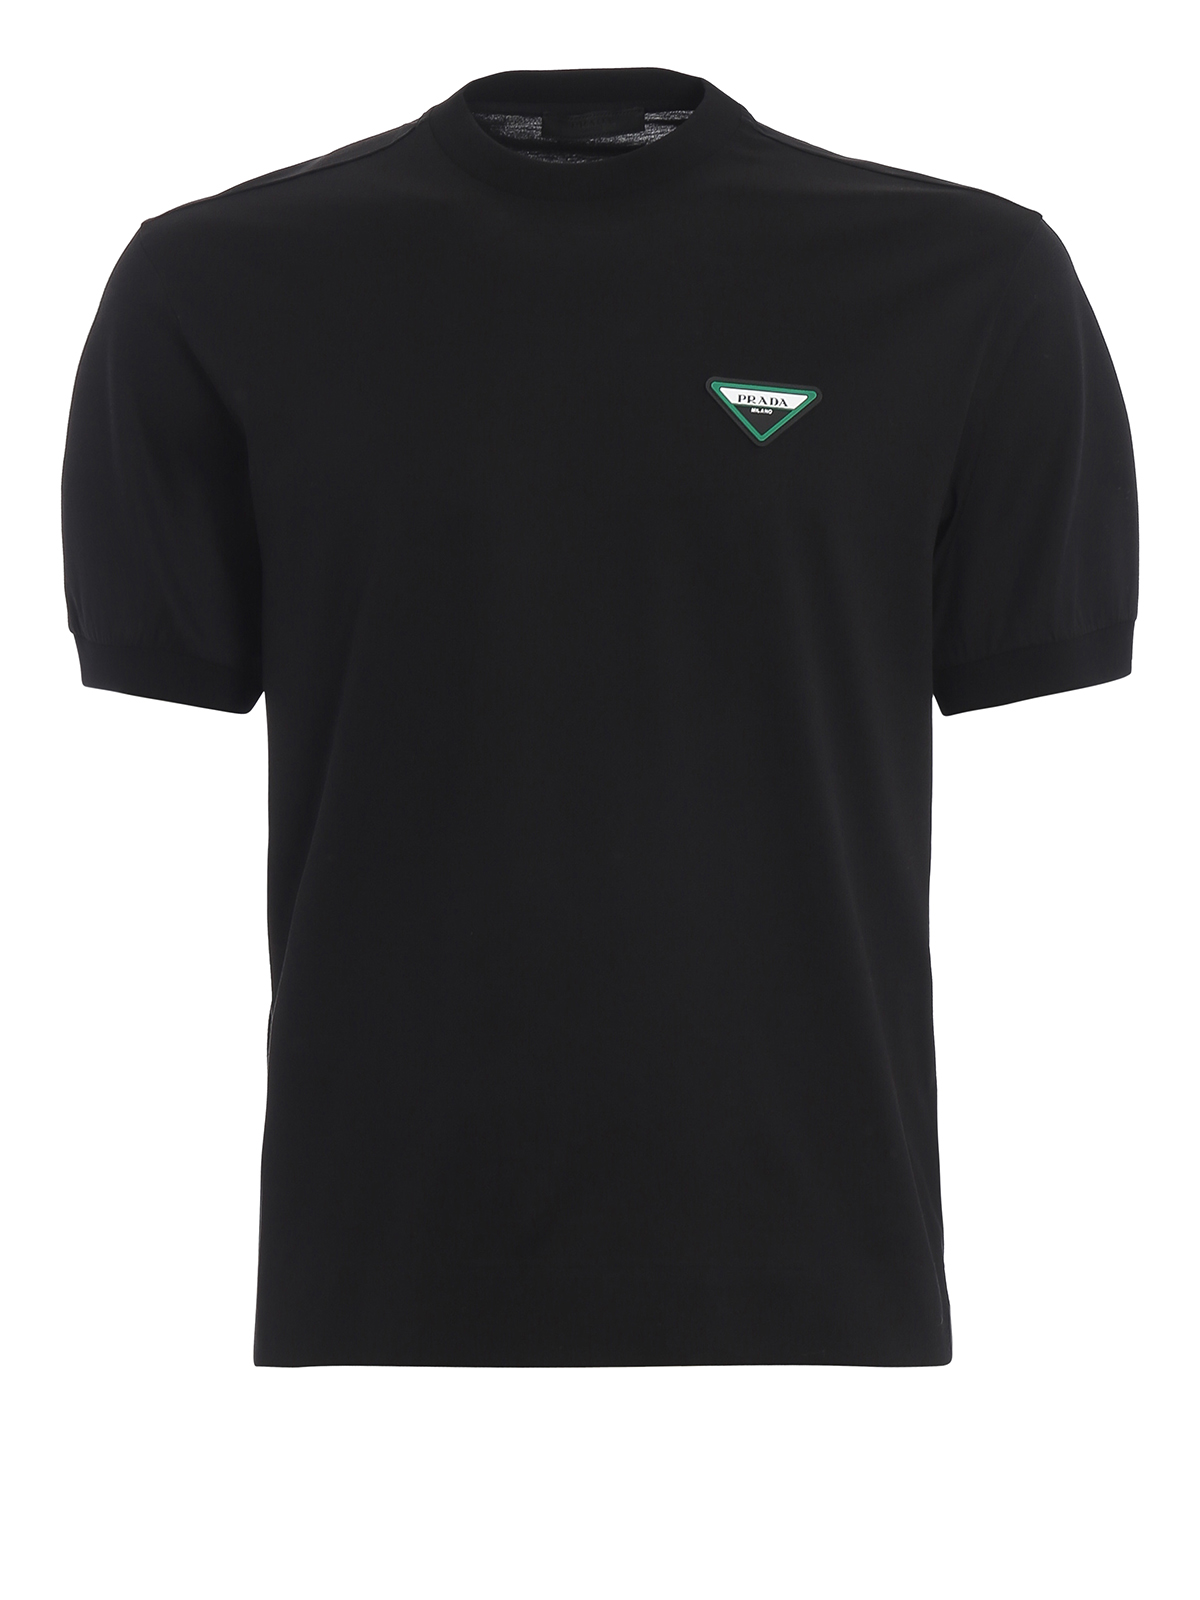 T-shirts Prada - Black lisle crew neck T-shirt - UJN558QYR002 | iKRIX.com